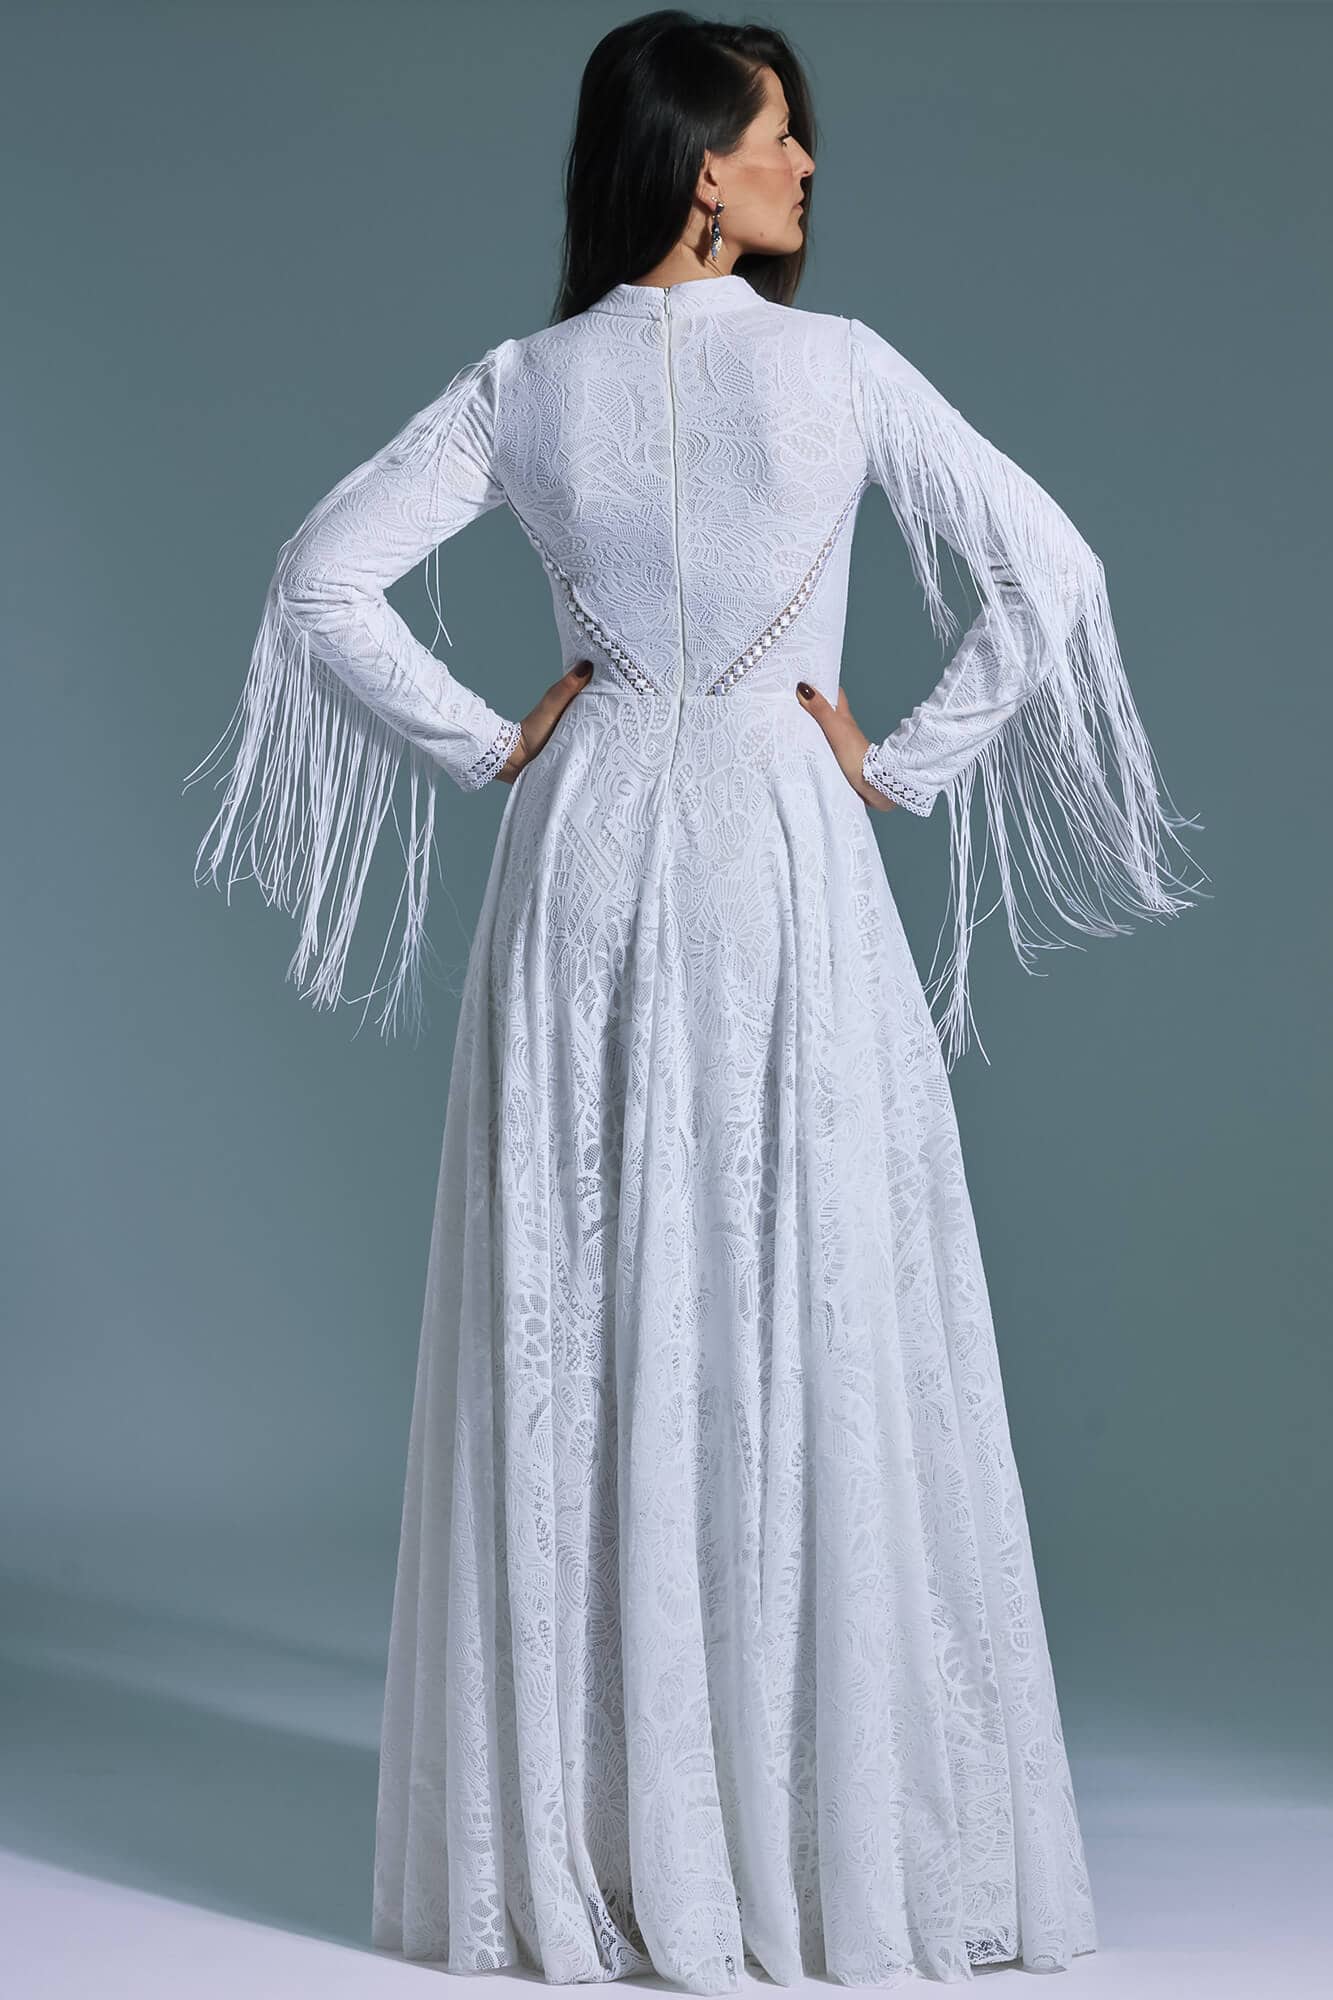 Zdobiona zabudowana długa suknia ślubna z frędzlami Santorini 21